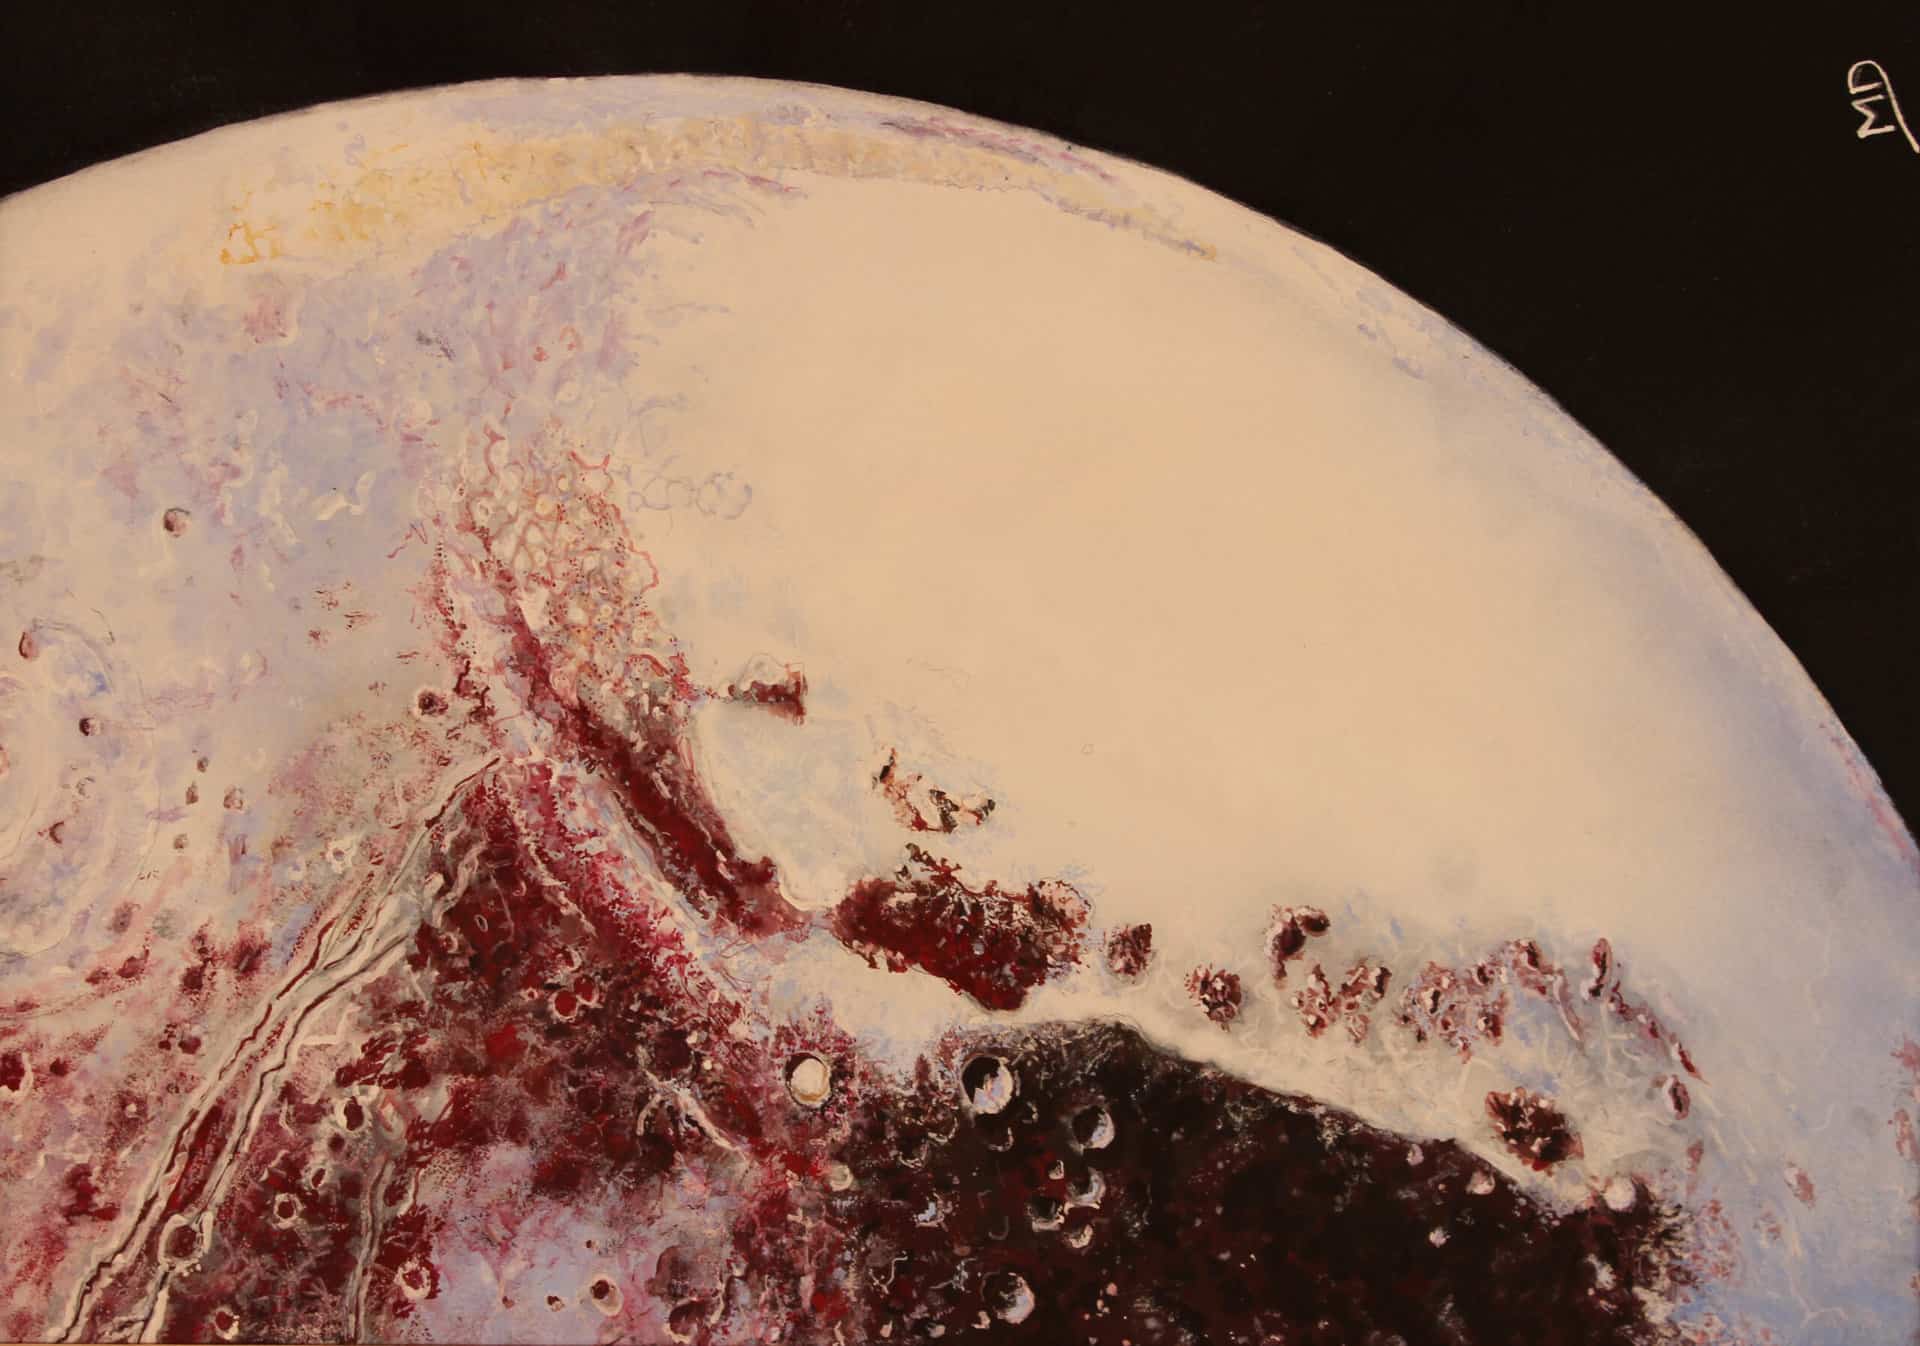 œuvre d'art, astronomie, gouache sur papier A4, david morel artiste, gros plan sur la planète Pluton